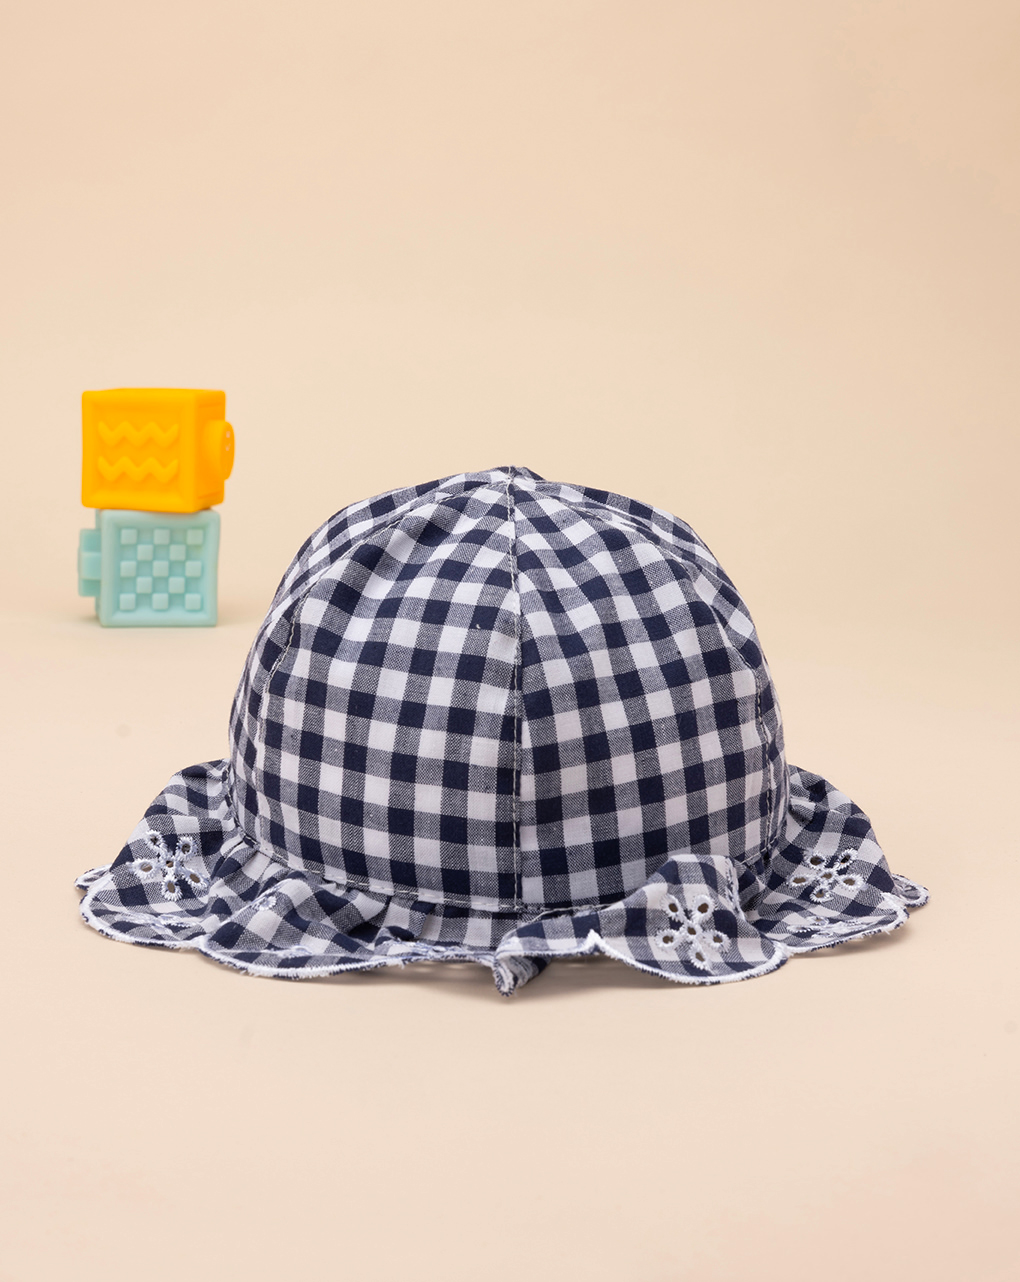 βρεφικό καπέλο καρό μπλε/λευκό για κορίτσι - Prénatal